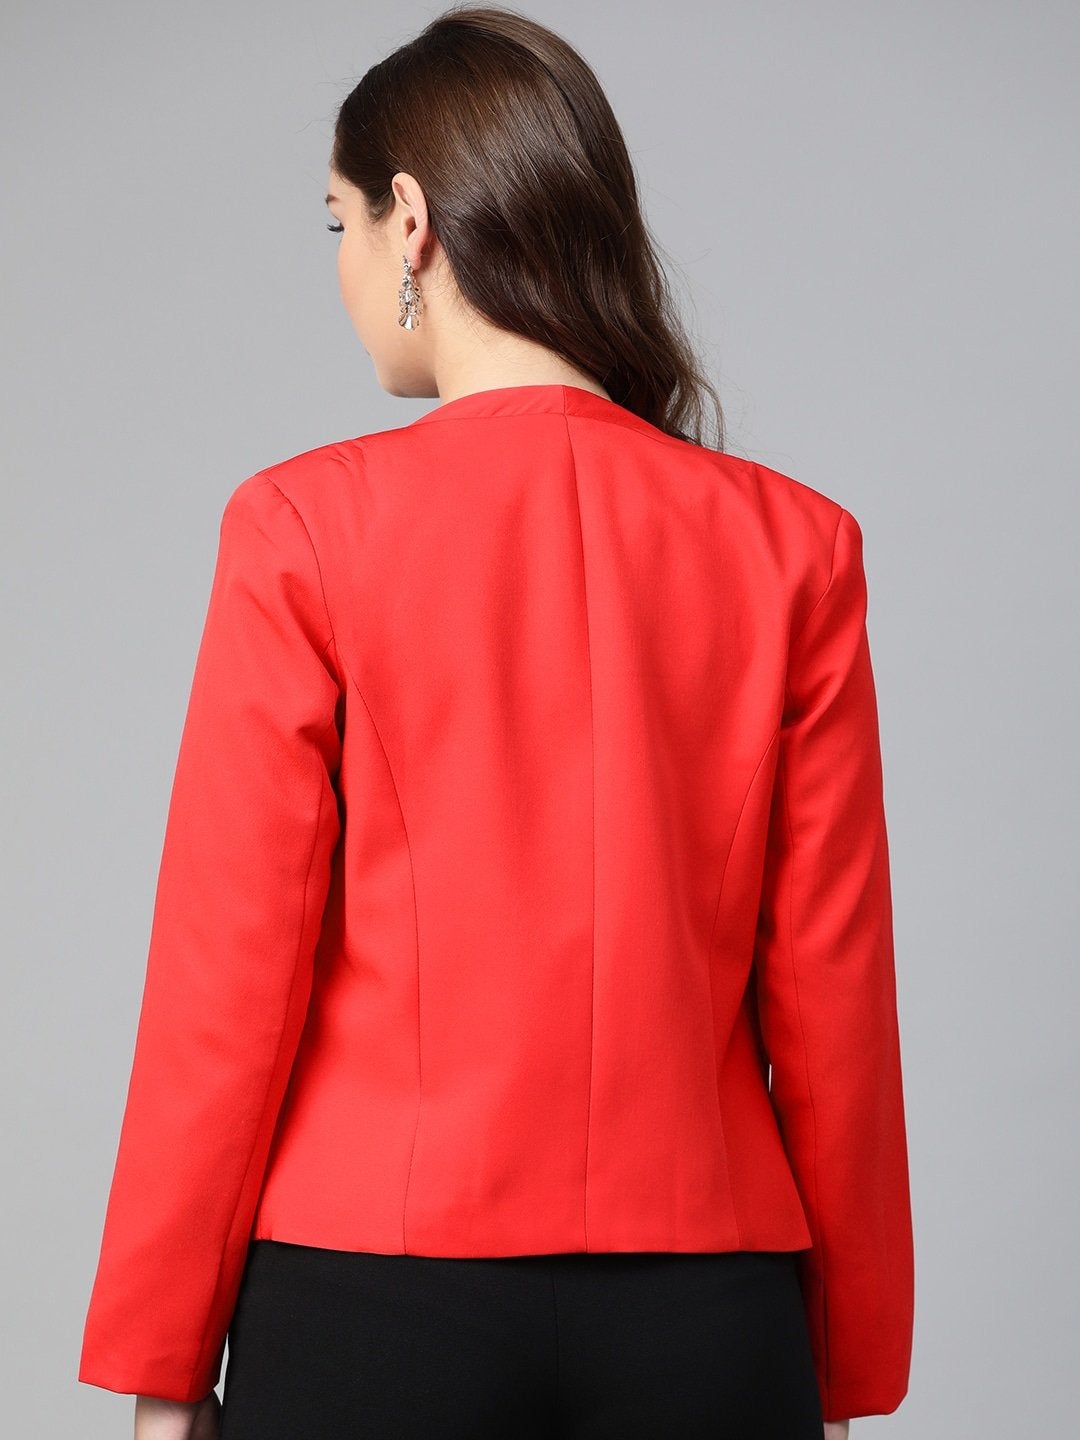 Women's Red Solid Blazer - Pannkh